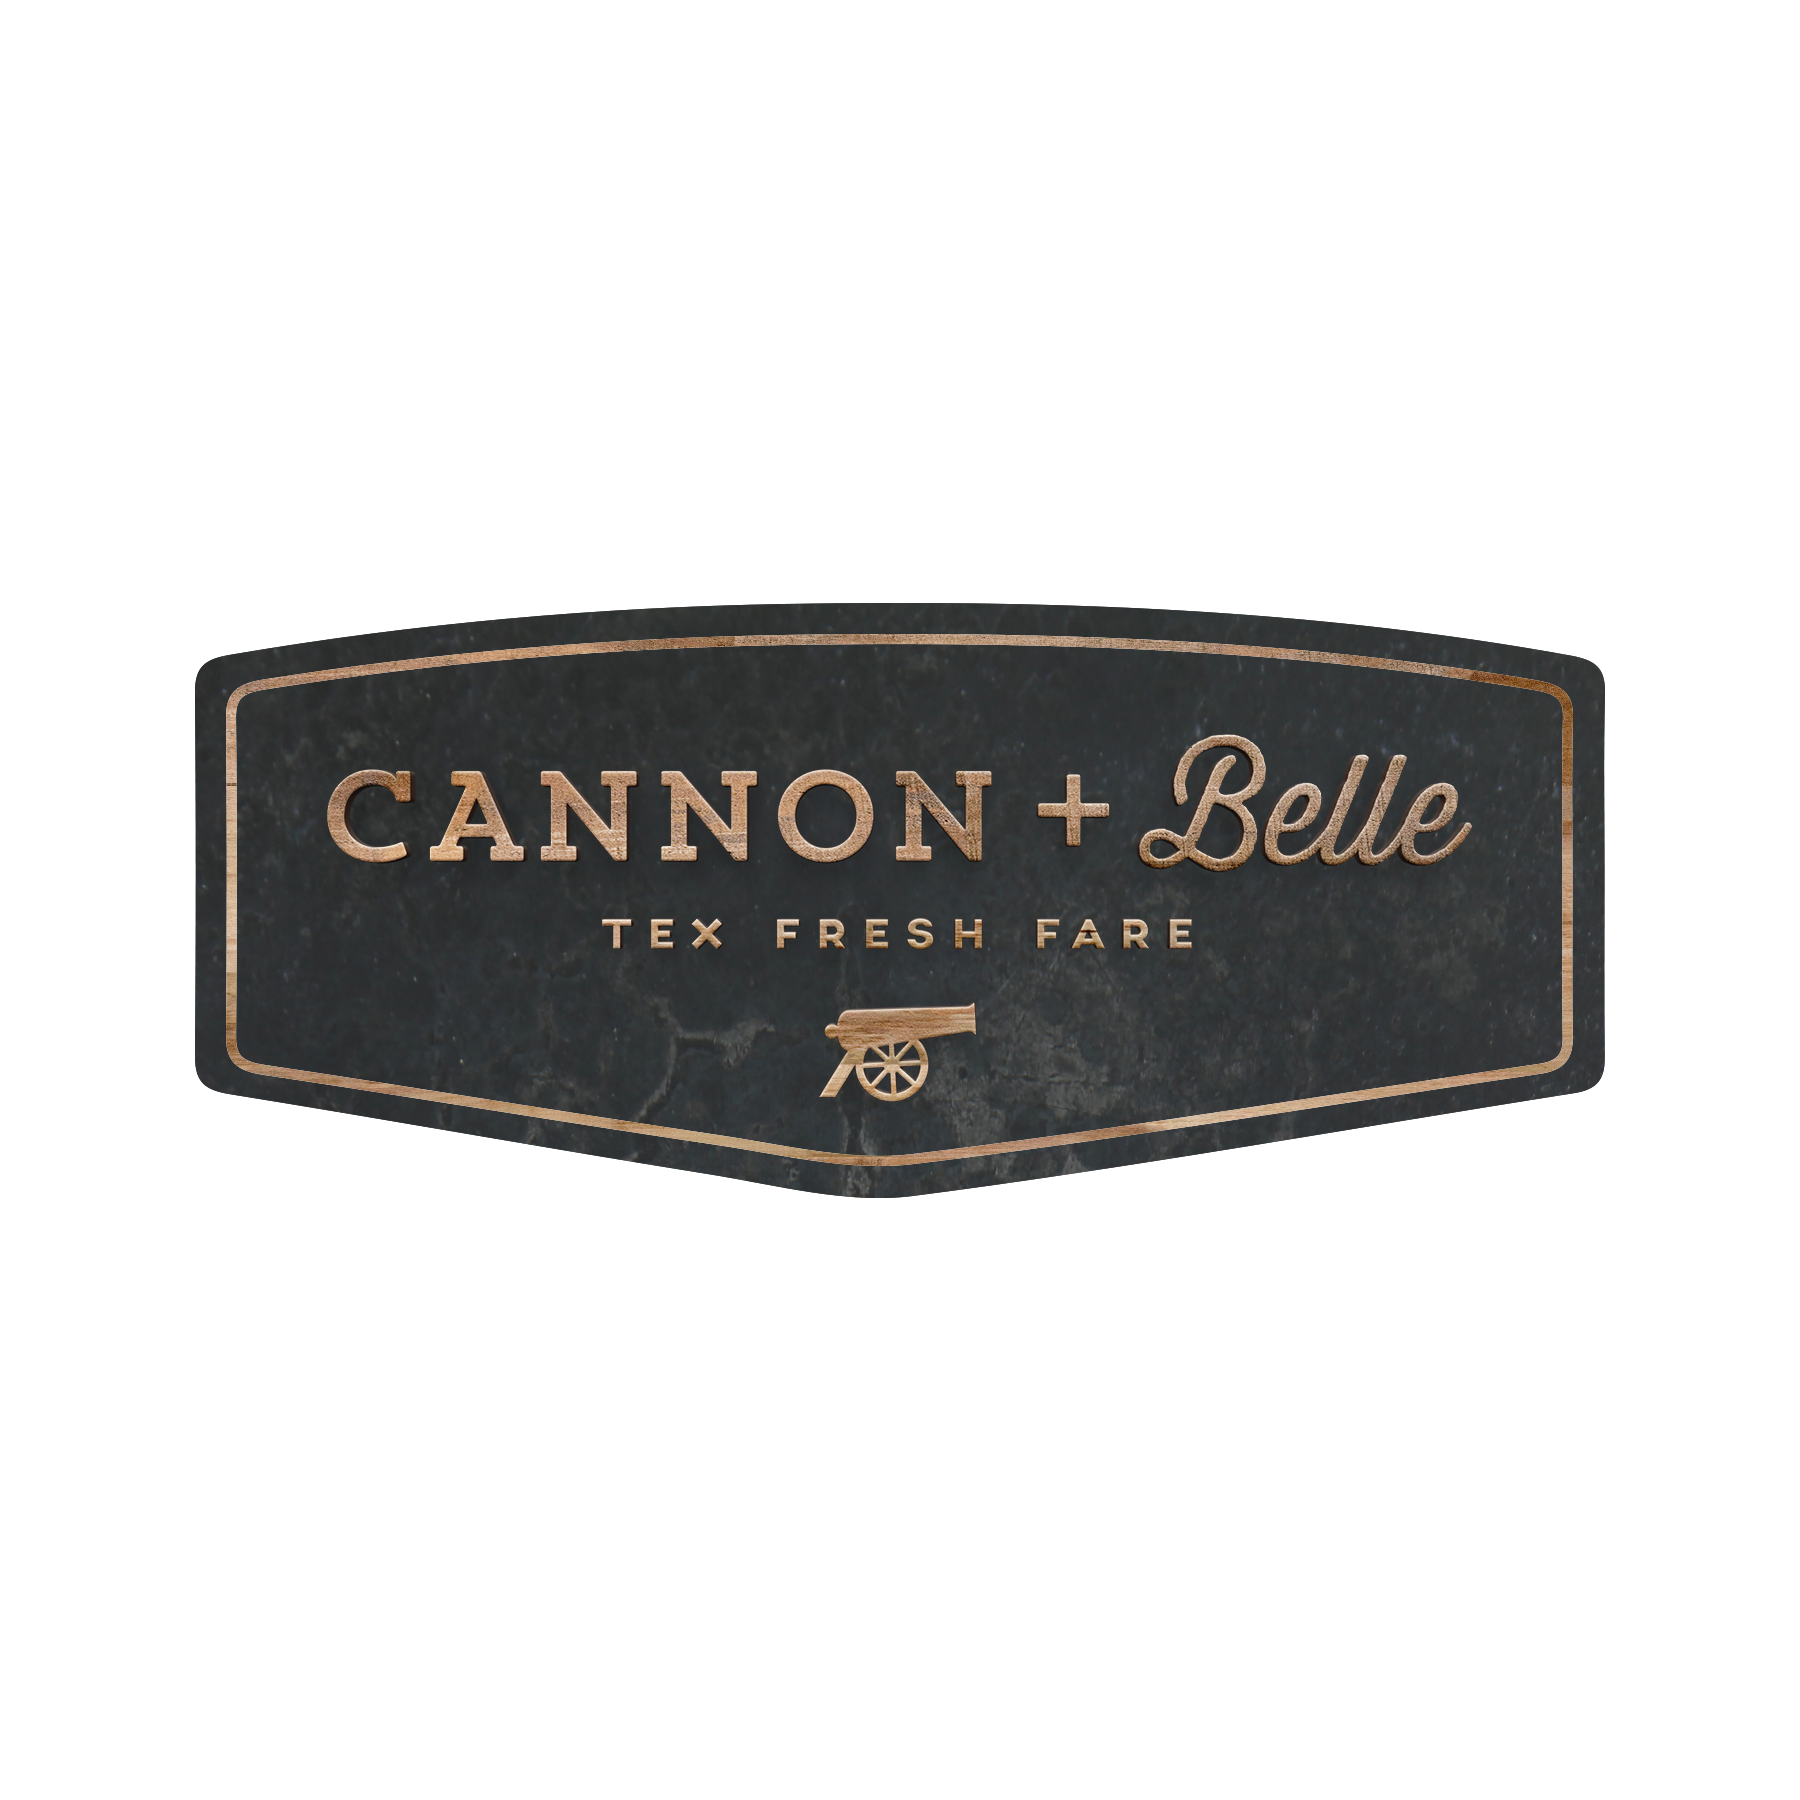 Cannon + Belle